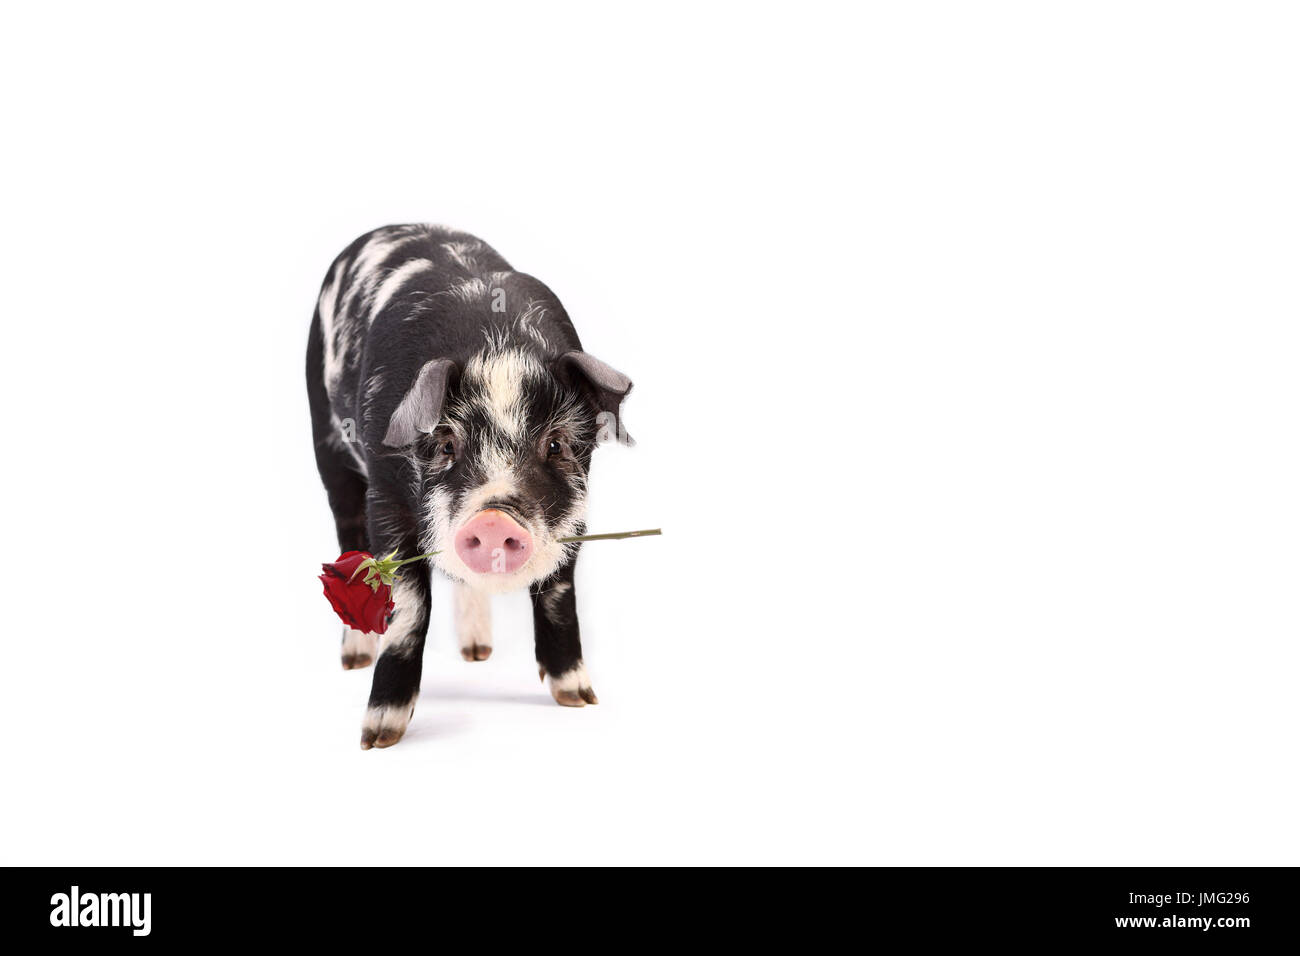 Turopolje cochon. Dans l'exercice permanent de porcelet une rose rouge dans sa bouche. Studio photo sur un fond blanc. Allemagne Banque D'Images